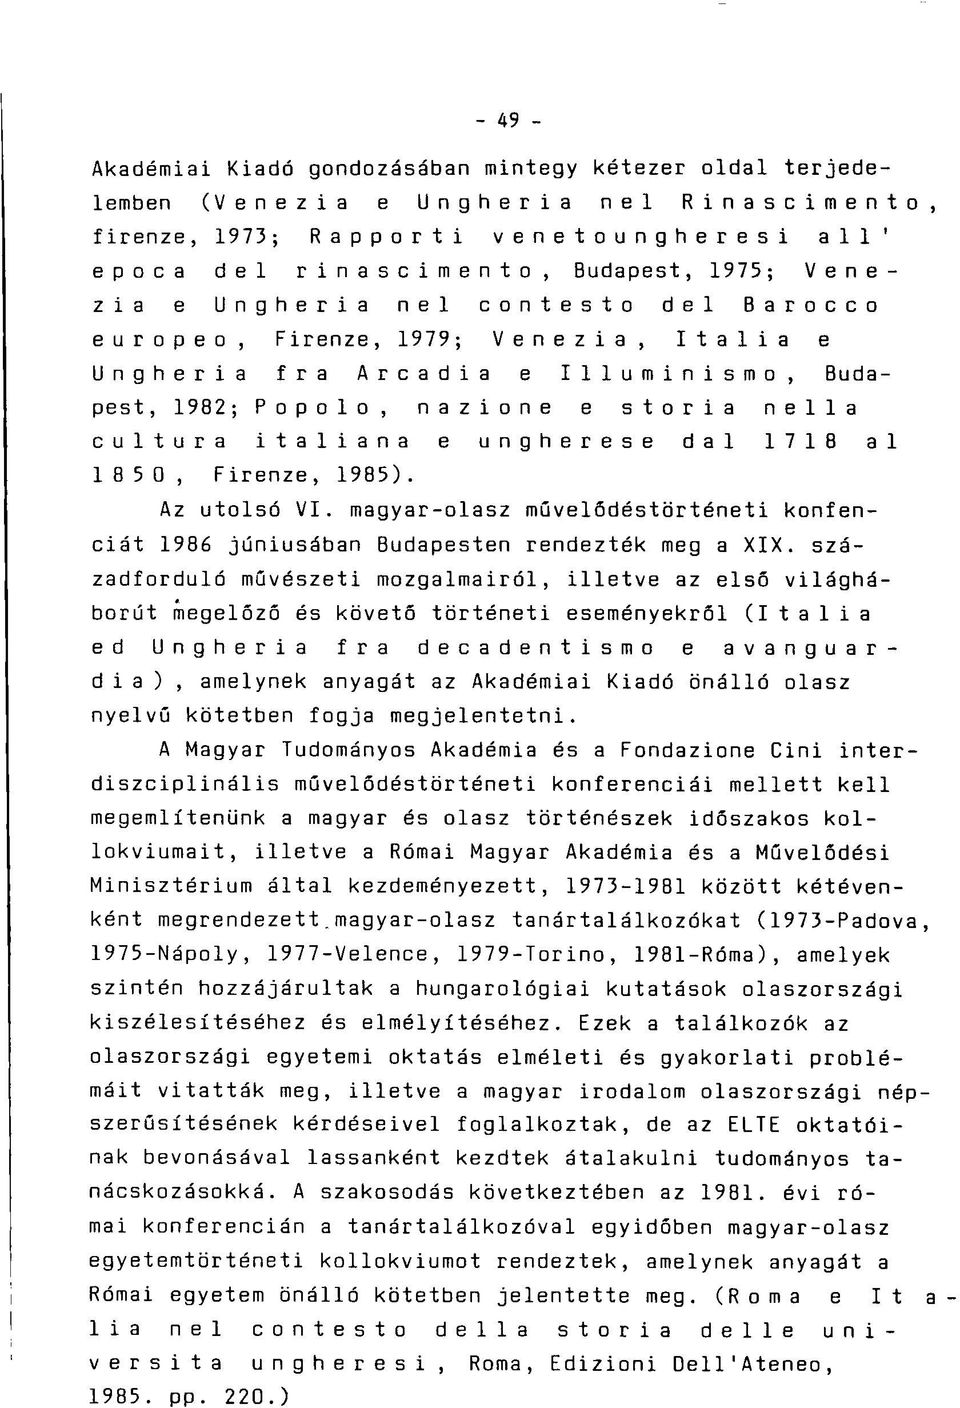 ungherese dal 1718 al 1 8 5 0, Firenze, 1985). Az utolsó VI. magyar-olasz művelődéstörténeti konfenciát 1986 júniusában Budapesten rendezték meg a XIX.